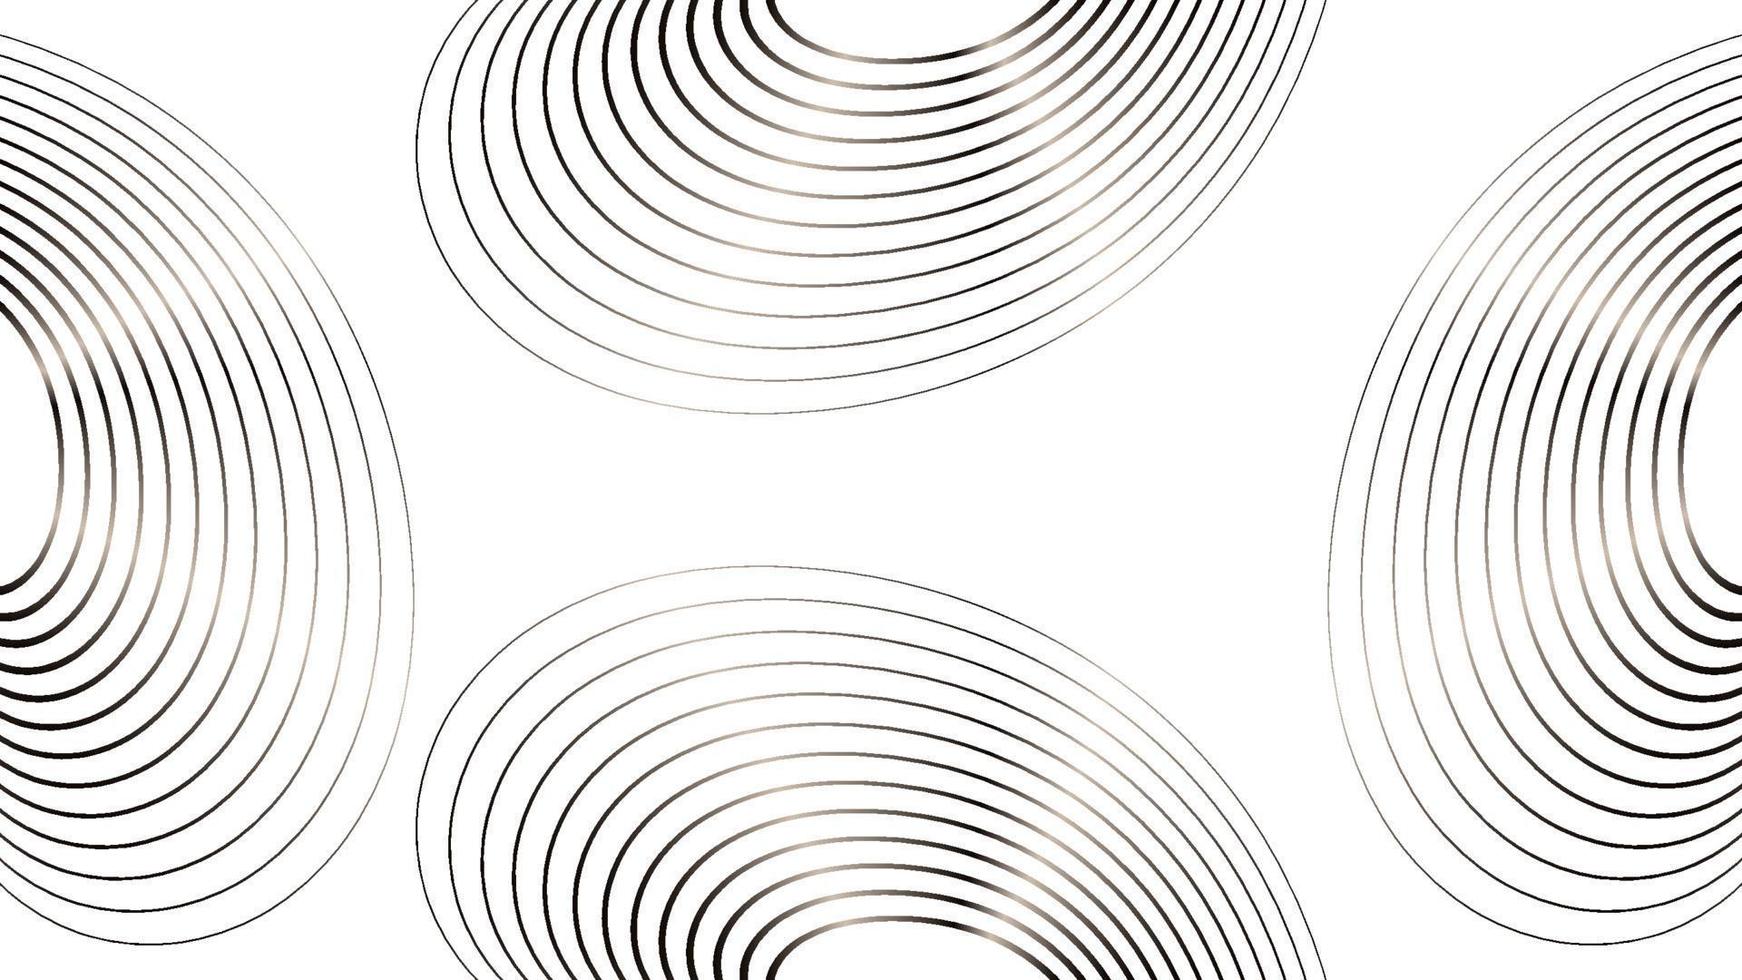 gyllene båge linje mönster på en vit bakgrund. abstrakt bakgrund design mall vektor